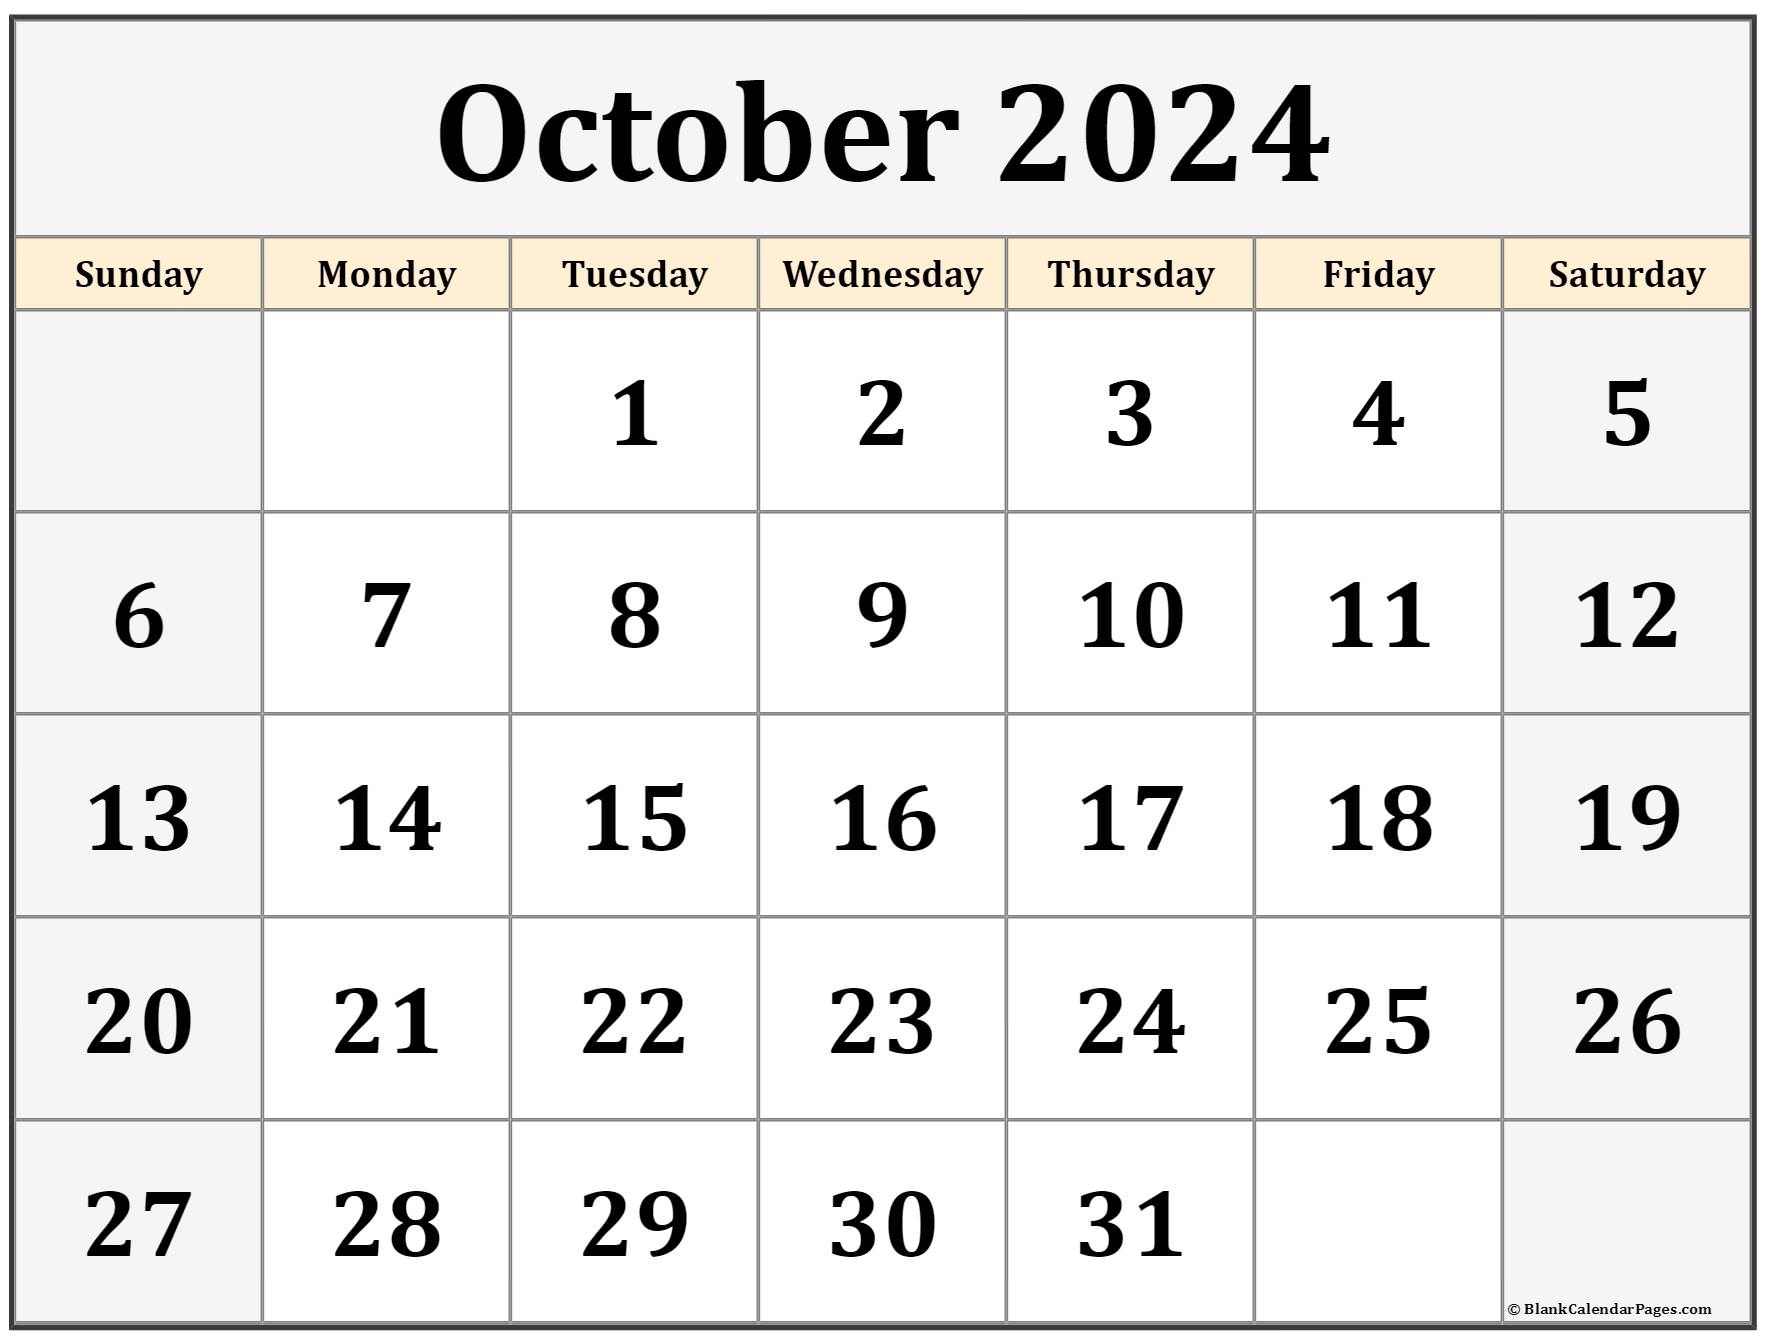 October 2024 Calendar Printable October 2024 Printable Calendar